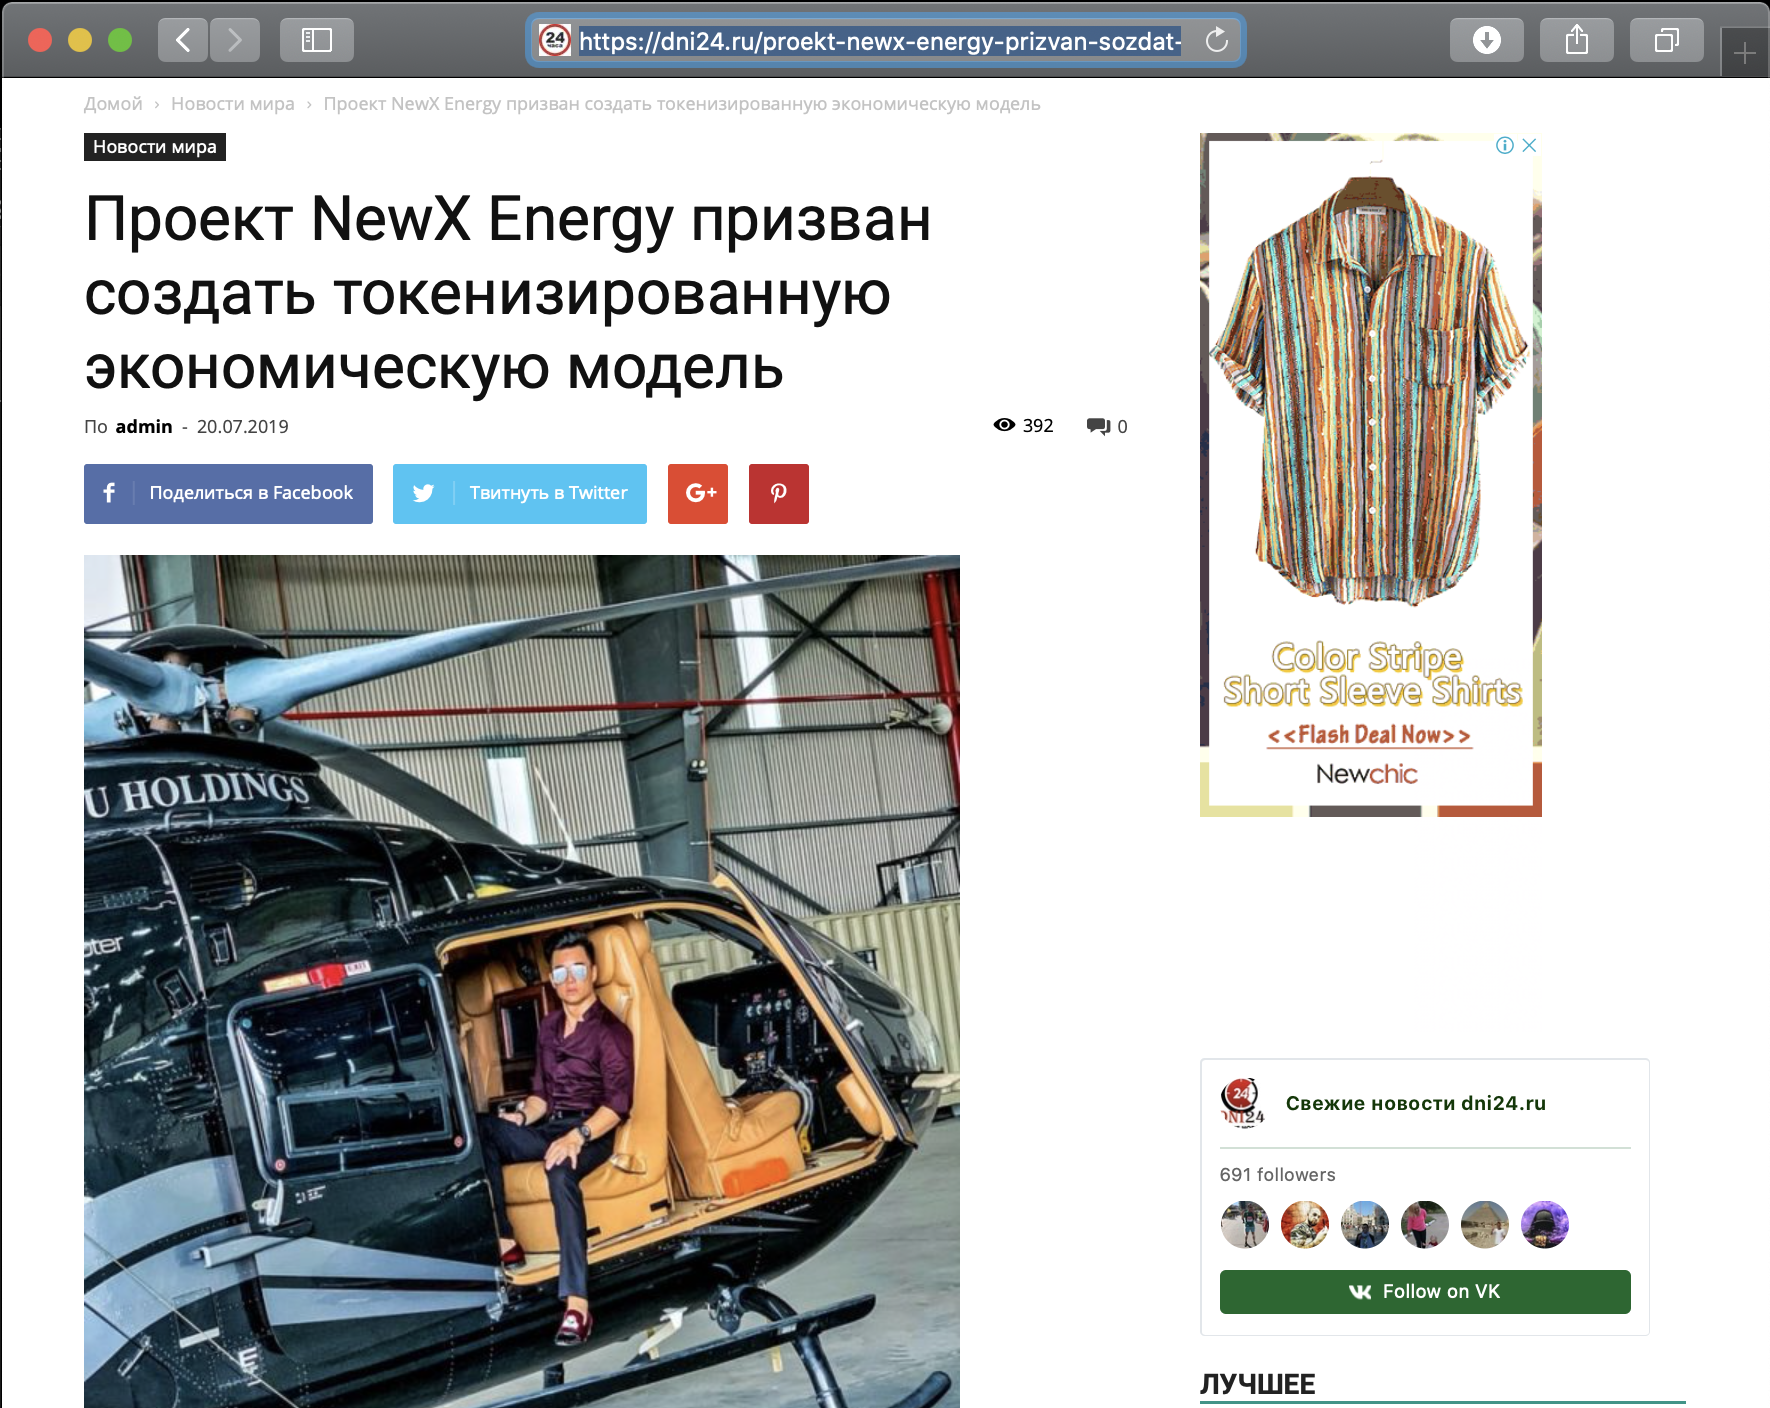 DNI24 Russian News – Проект NewX Energy призван создать токенизированную экономическую модель